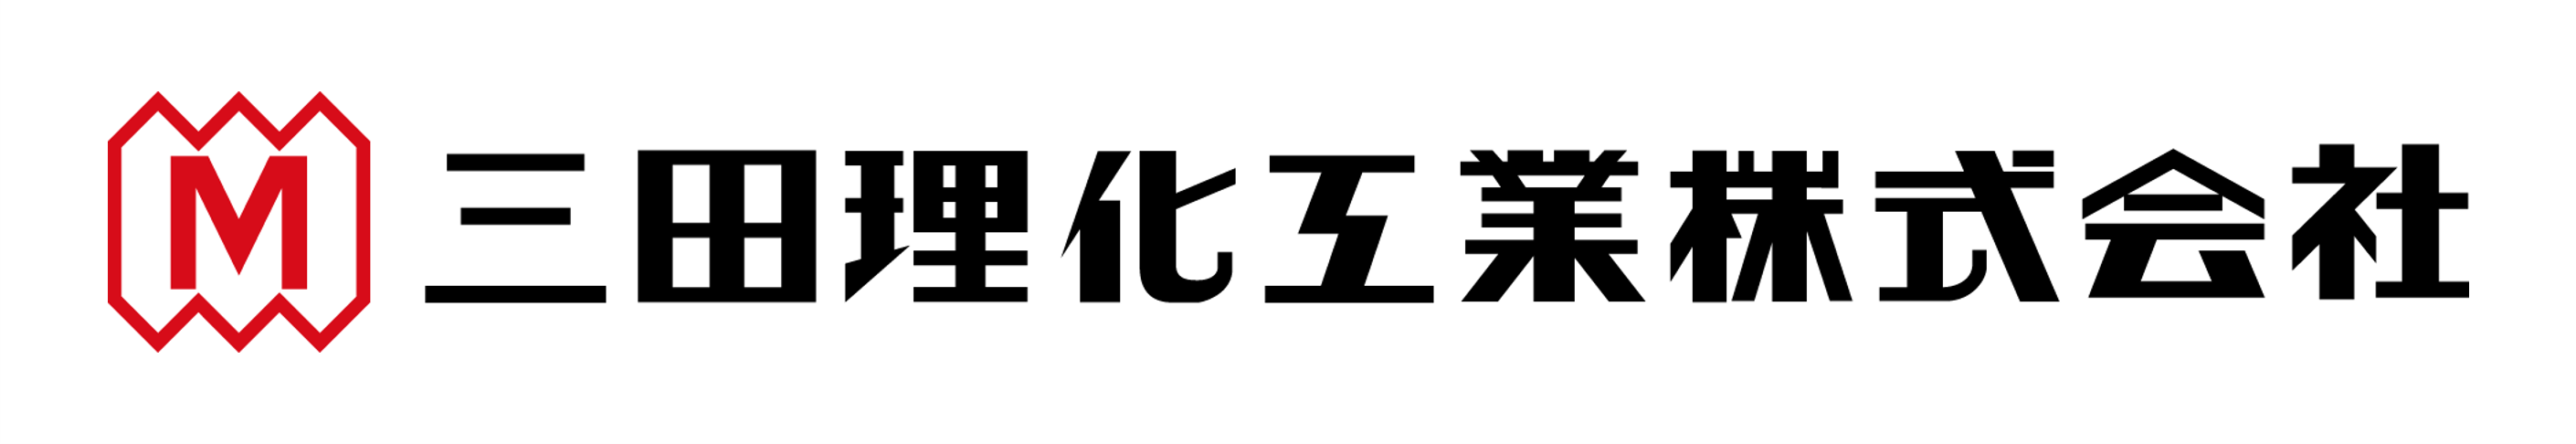 company__logo